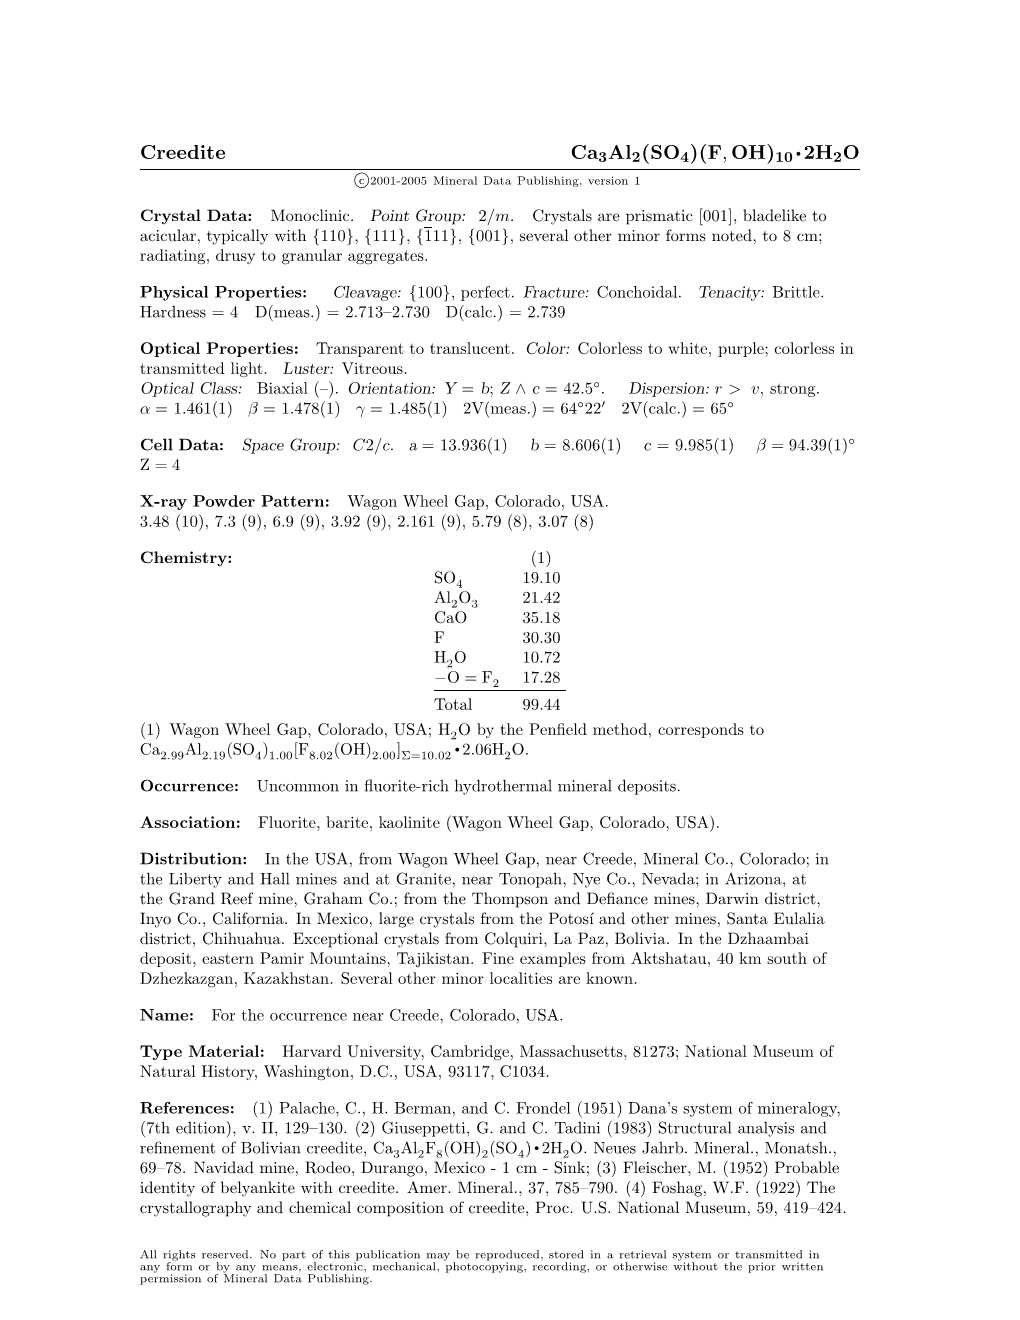 Creedite Ca3al2(SO4)(F, OH)10 • 2H2O C 2001-2005 Mineral Data Publishing, Version 1